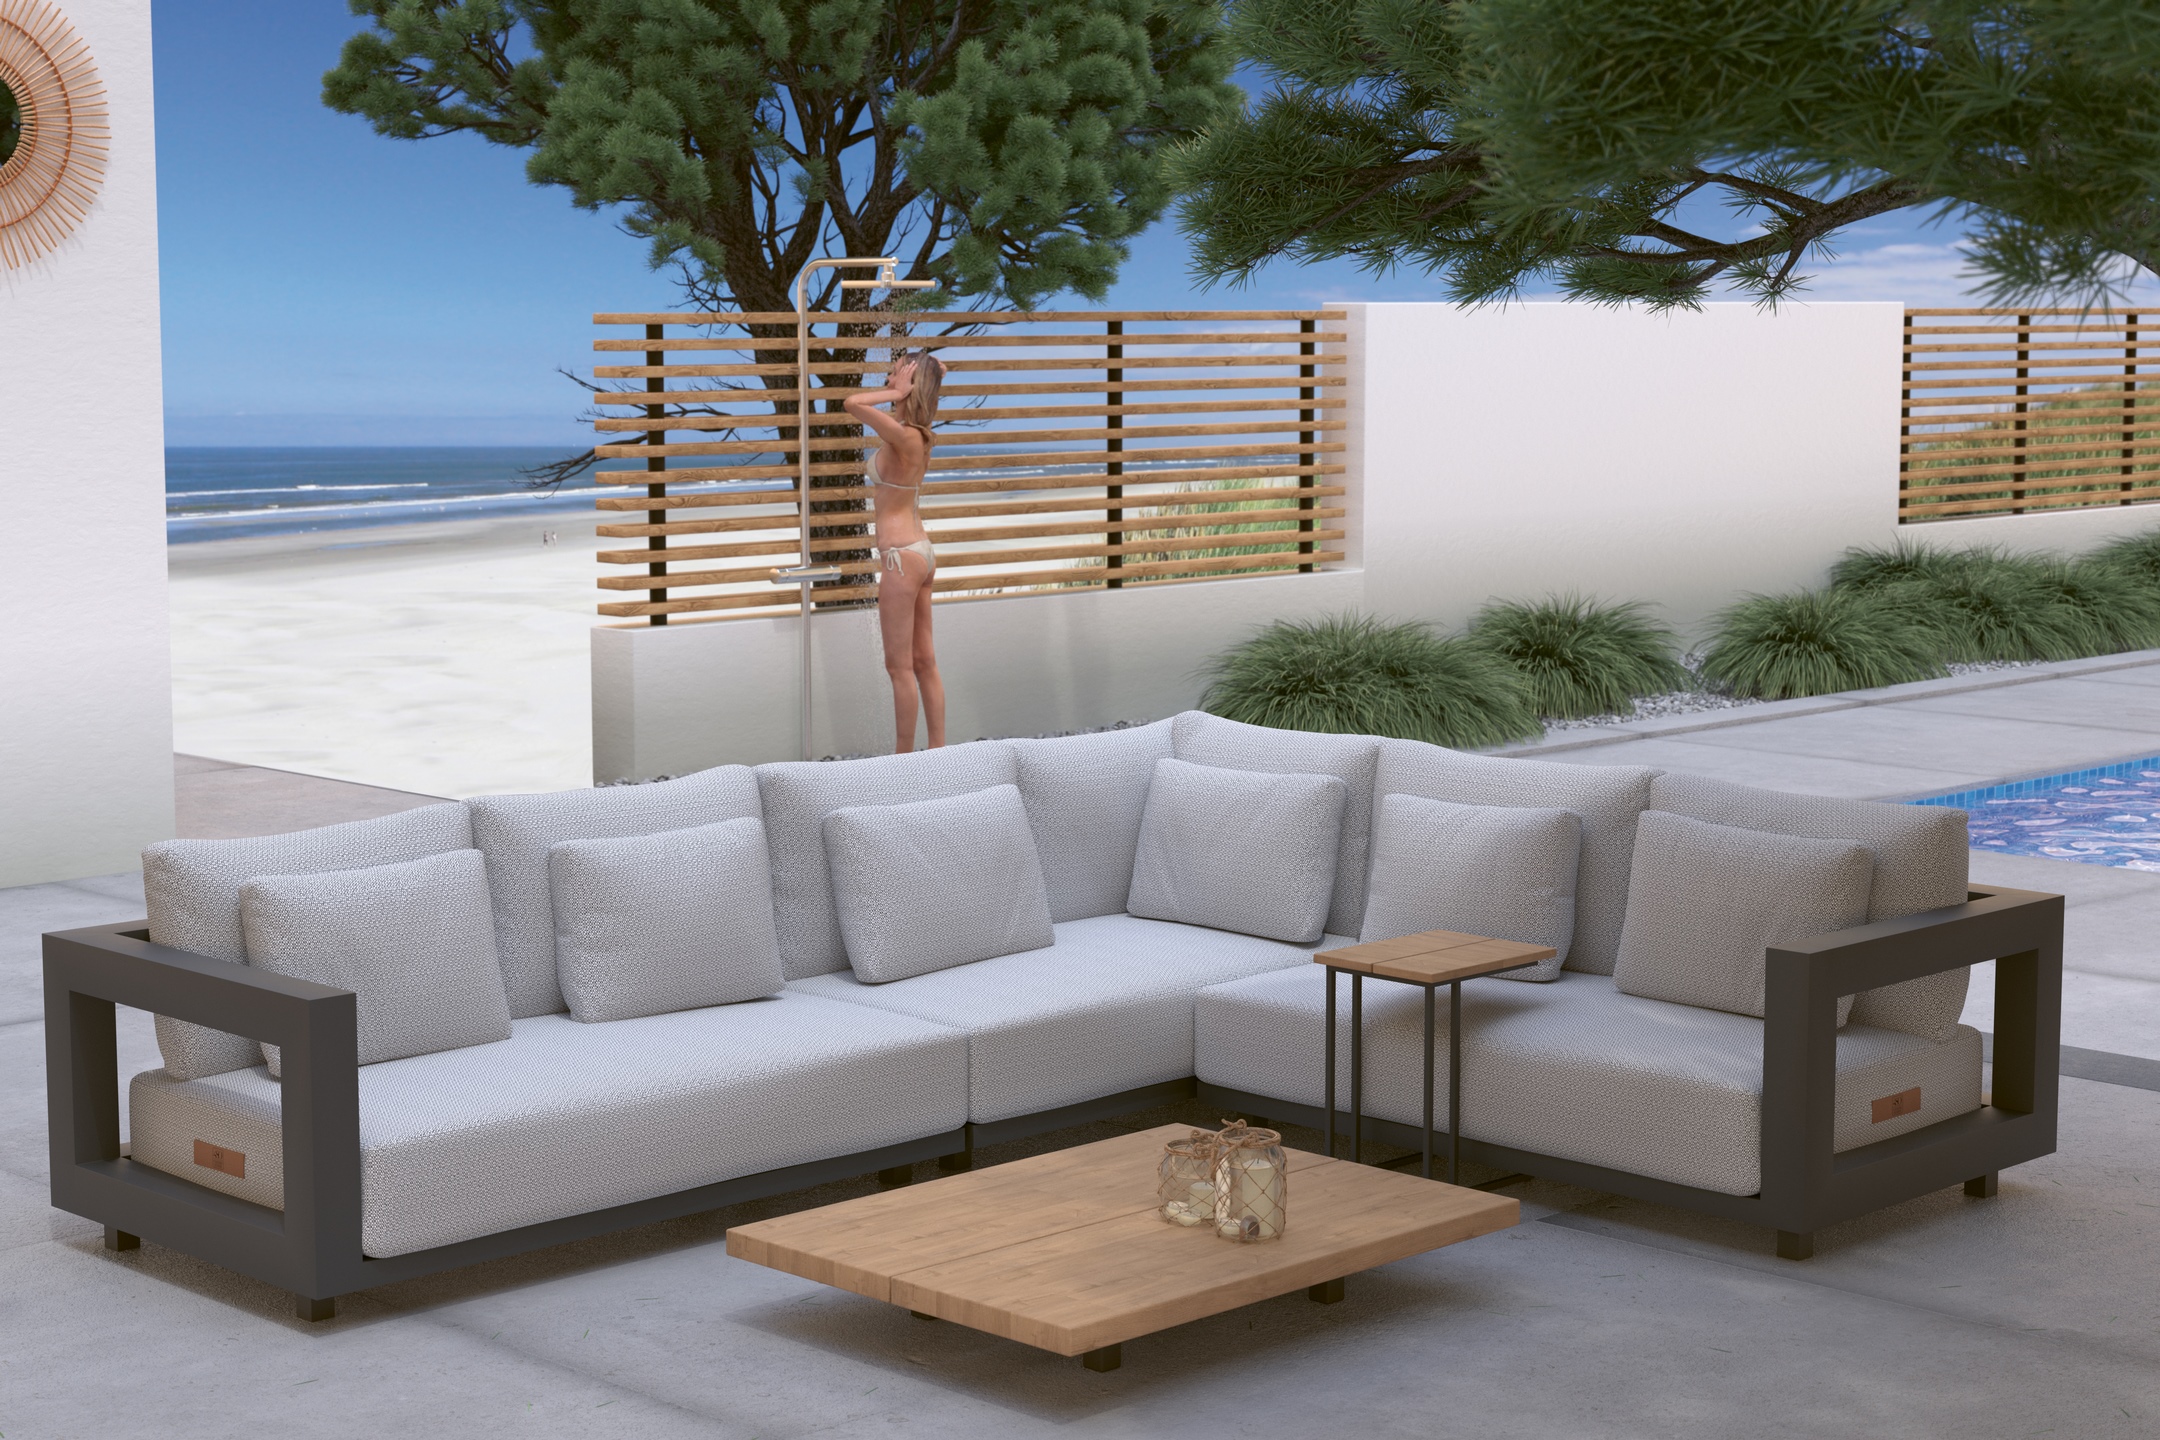 Metropolitan modular lounge - Outdoor image